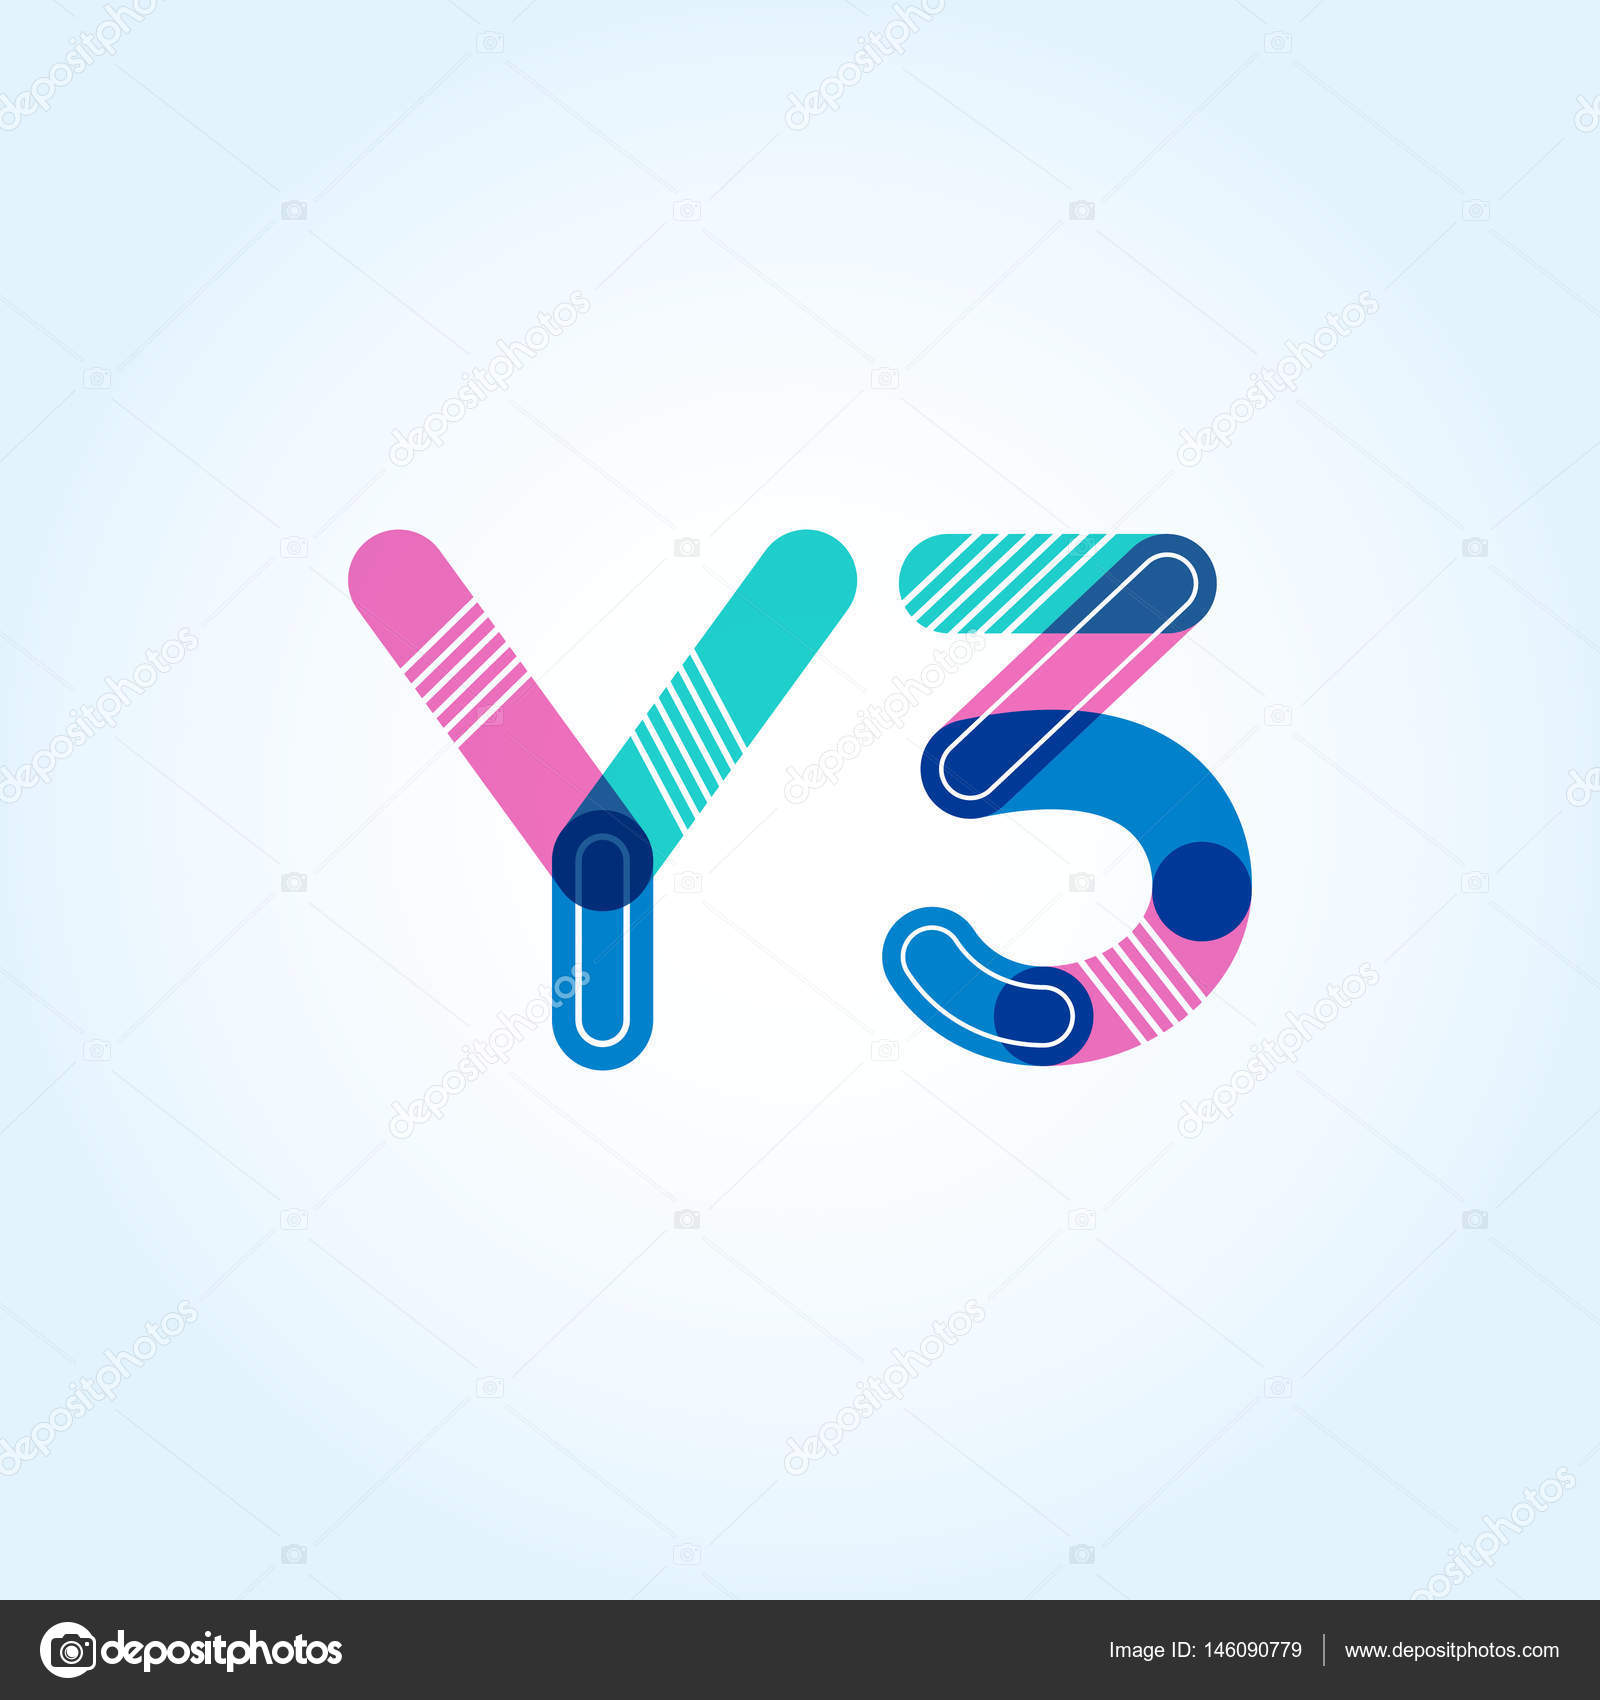 y3 logo